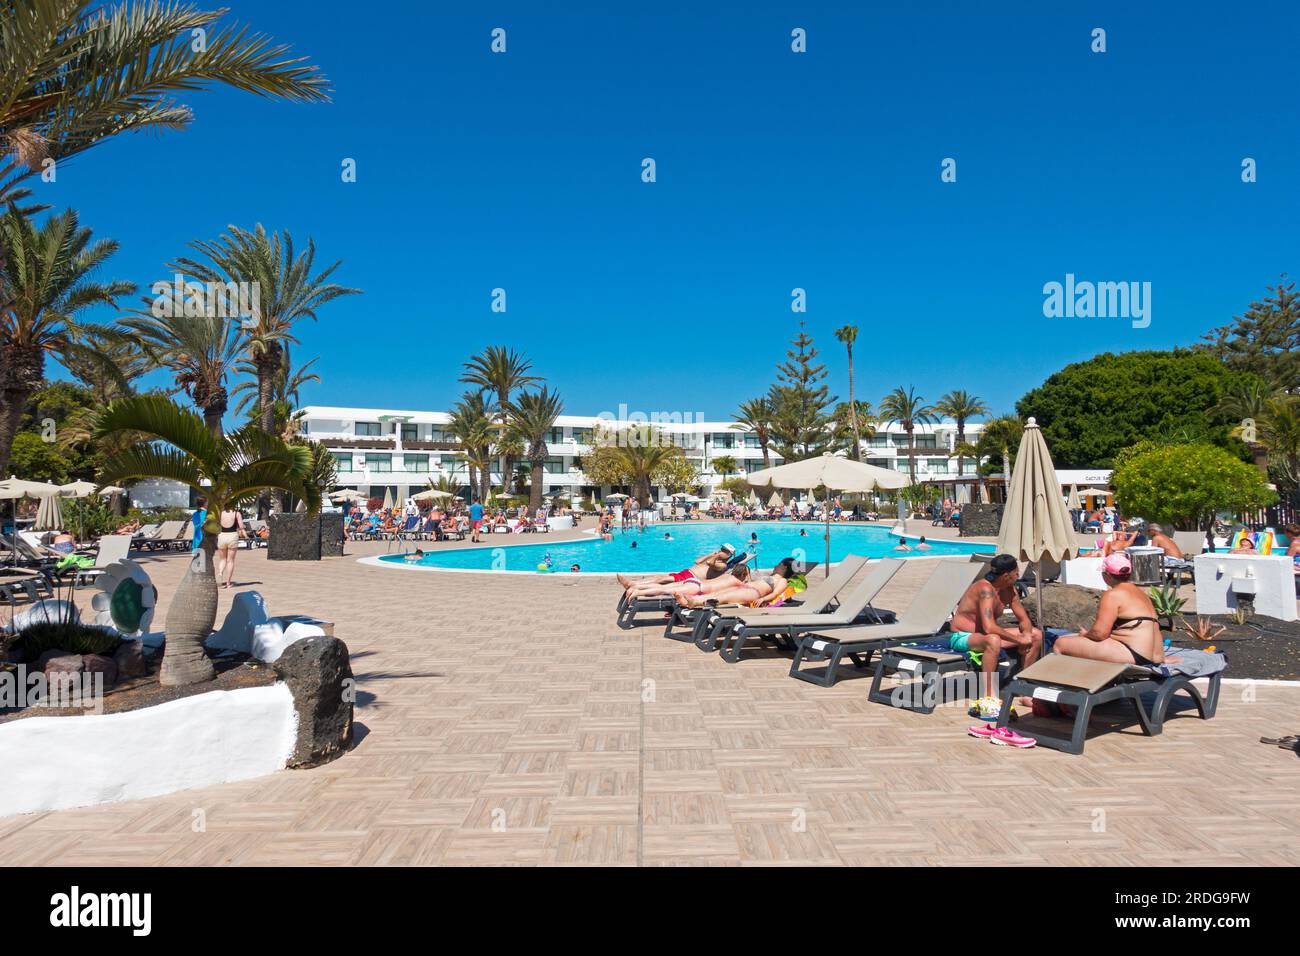 Vista típica de los huéspedes tomando el sol alrededor de una piscina en un hotel resort en la isla de Lanzarote, Islas Canarias, España Foto de stock